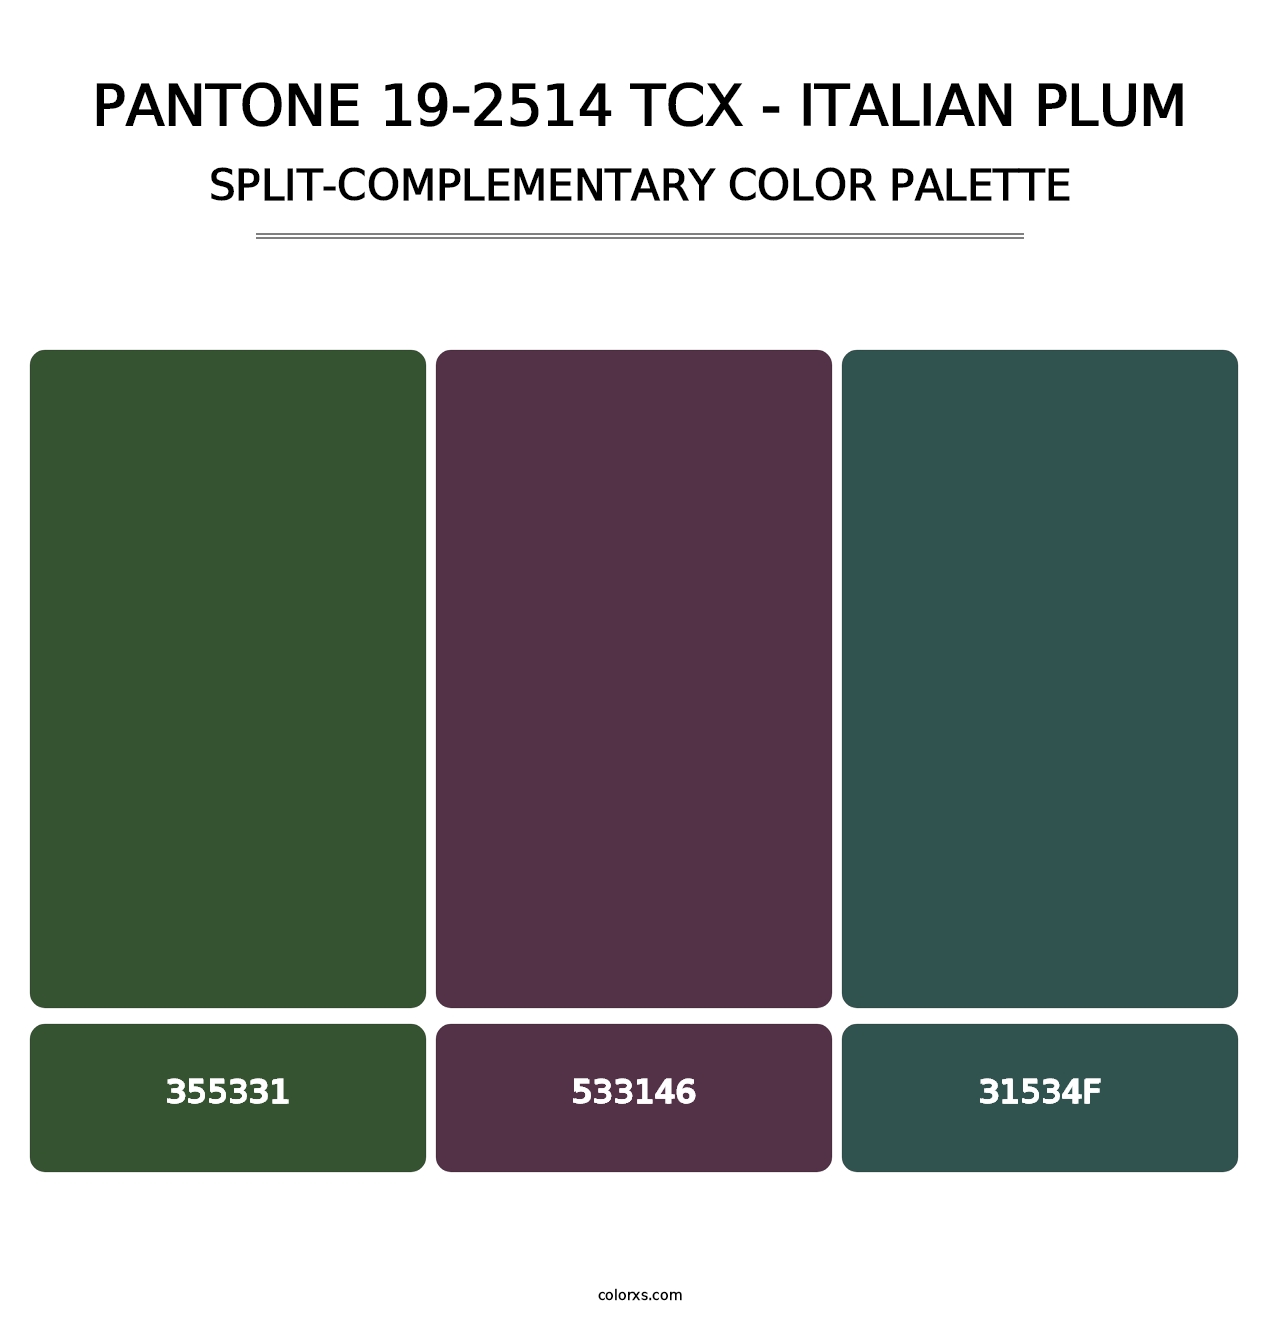 PANTONE 19-2514 TCX - Italian Plum - Split-Complementary Color Palette